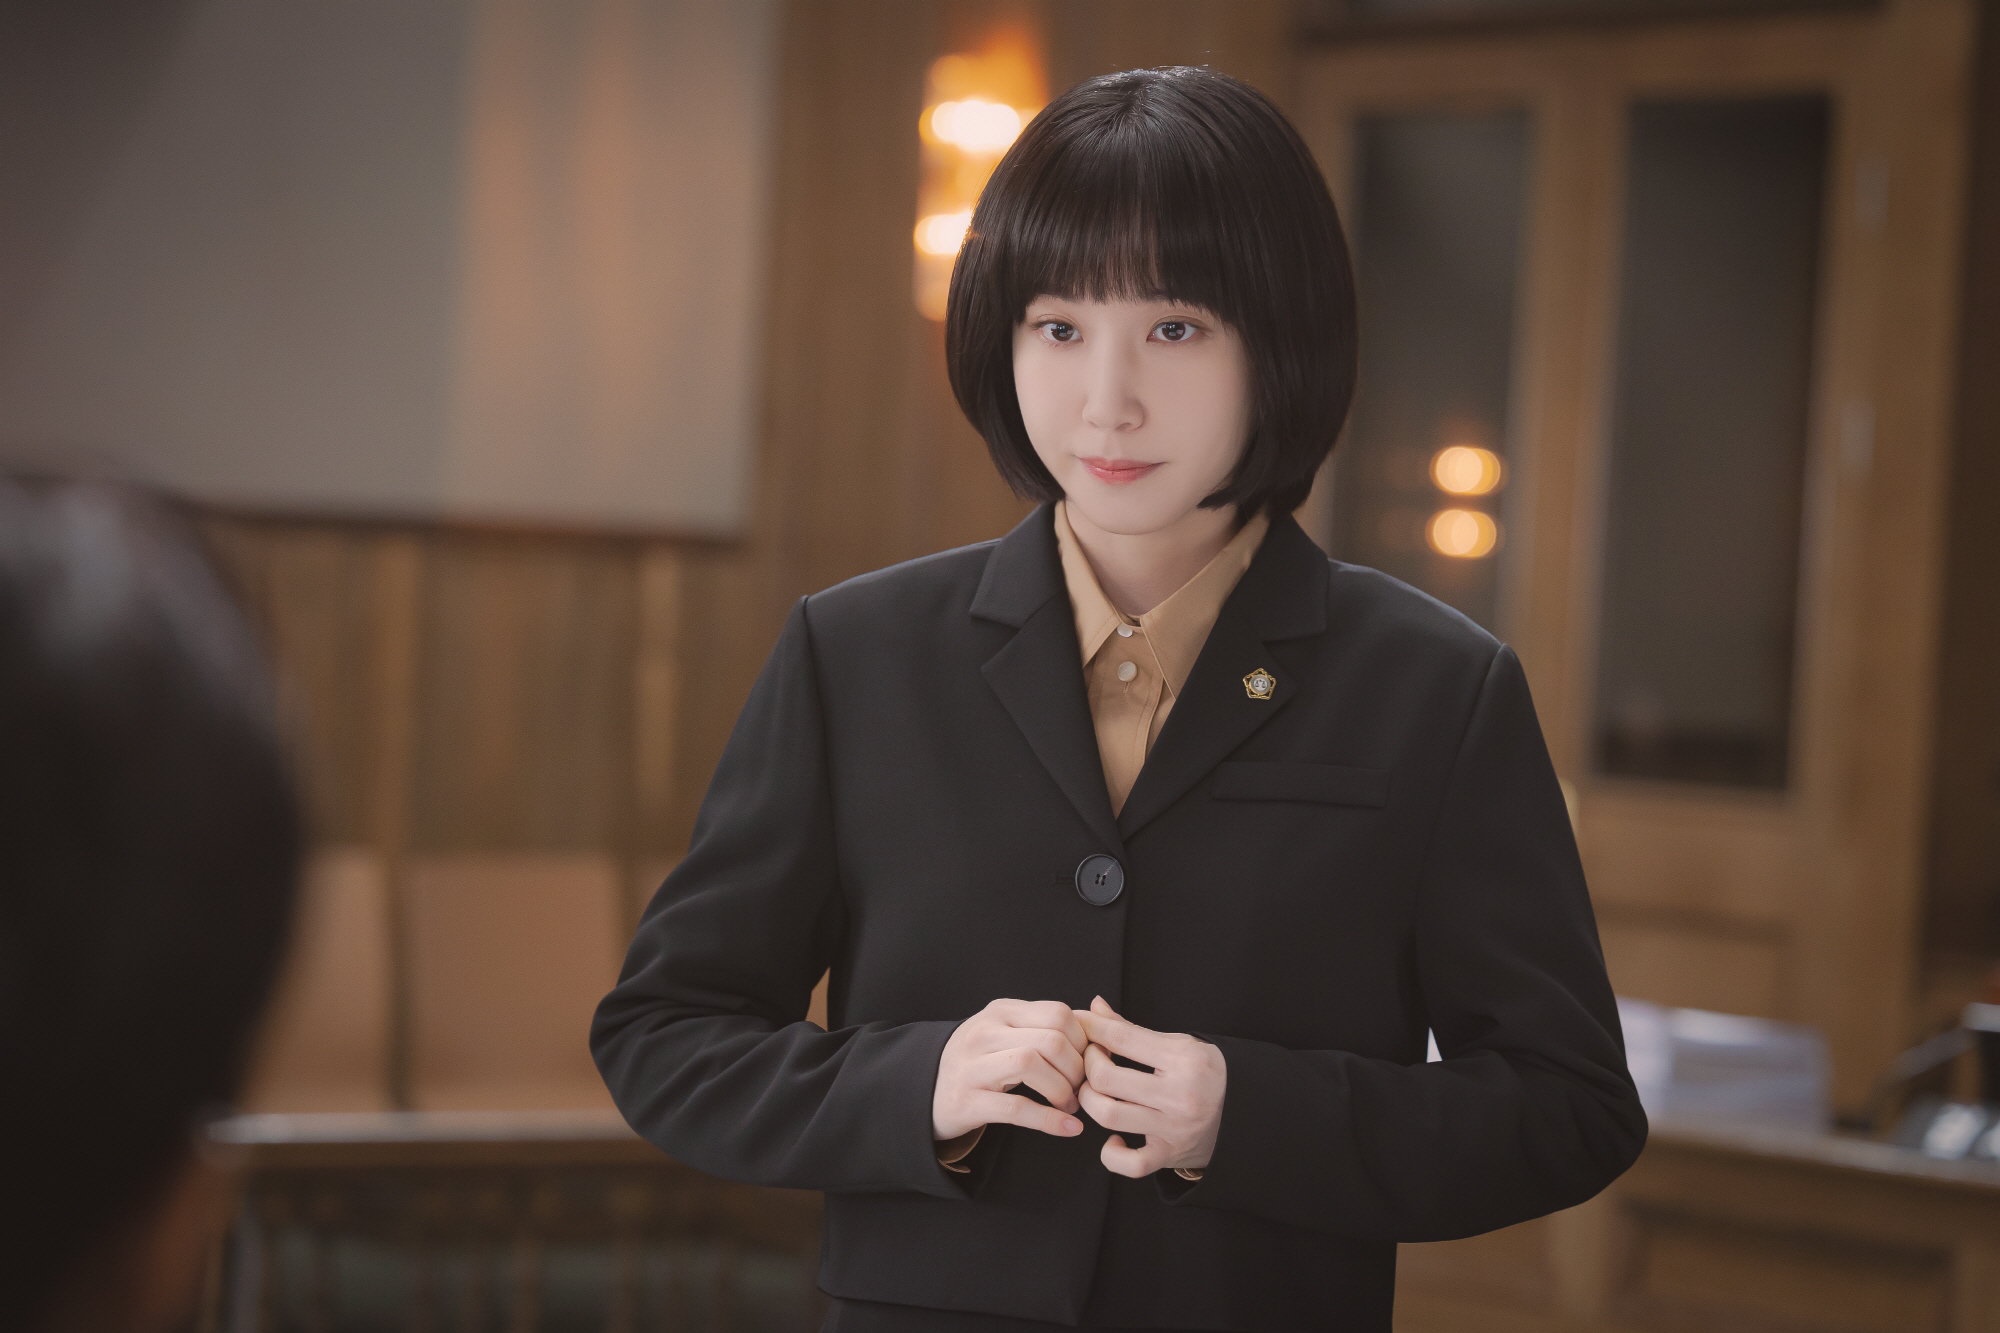 Nữ công tố viên kỳ lạ Woo Young Woo gây tiếng vang nhờ nội dung độc đáo và chứa đựng nhiều thông điệp tích cực.